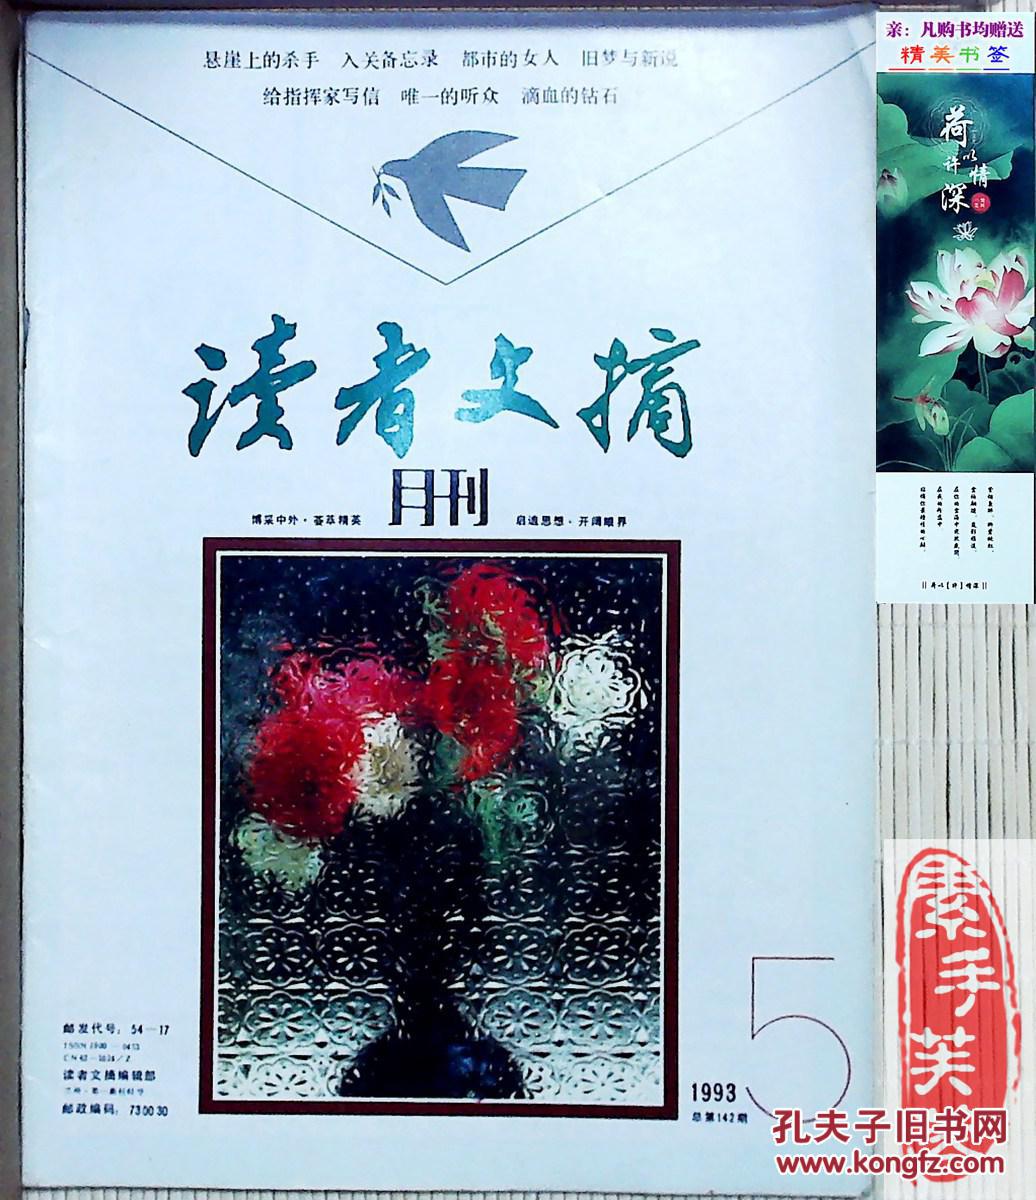 【图】《读者文摘》杂志,1993年第5期--中国期